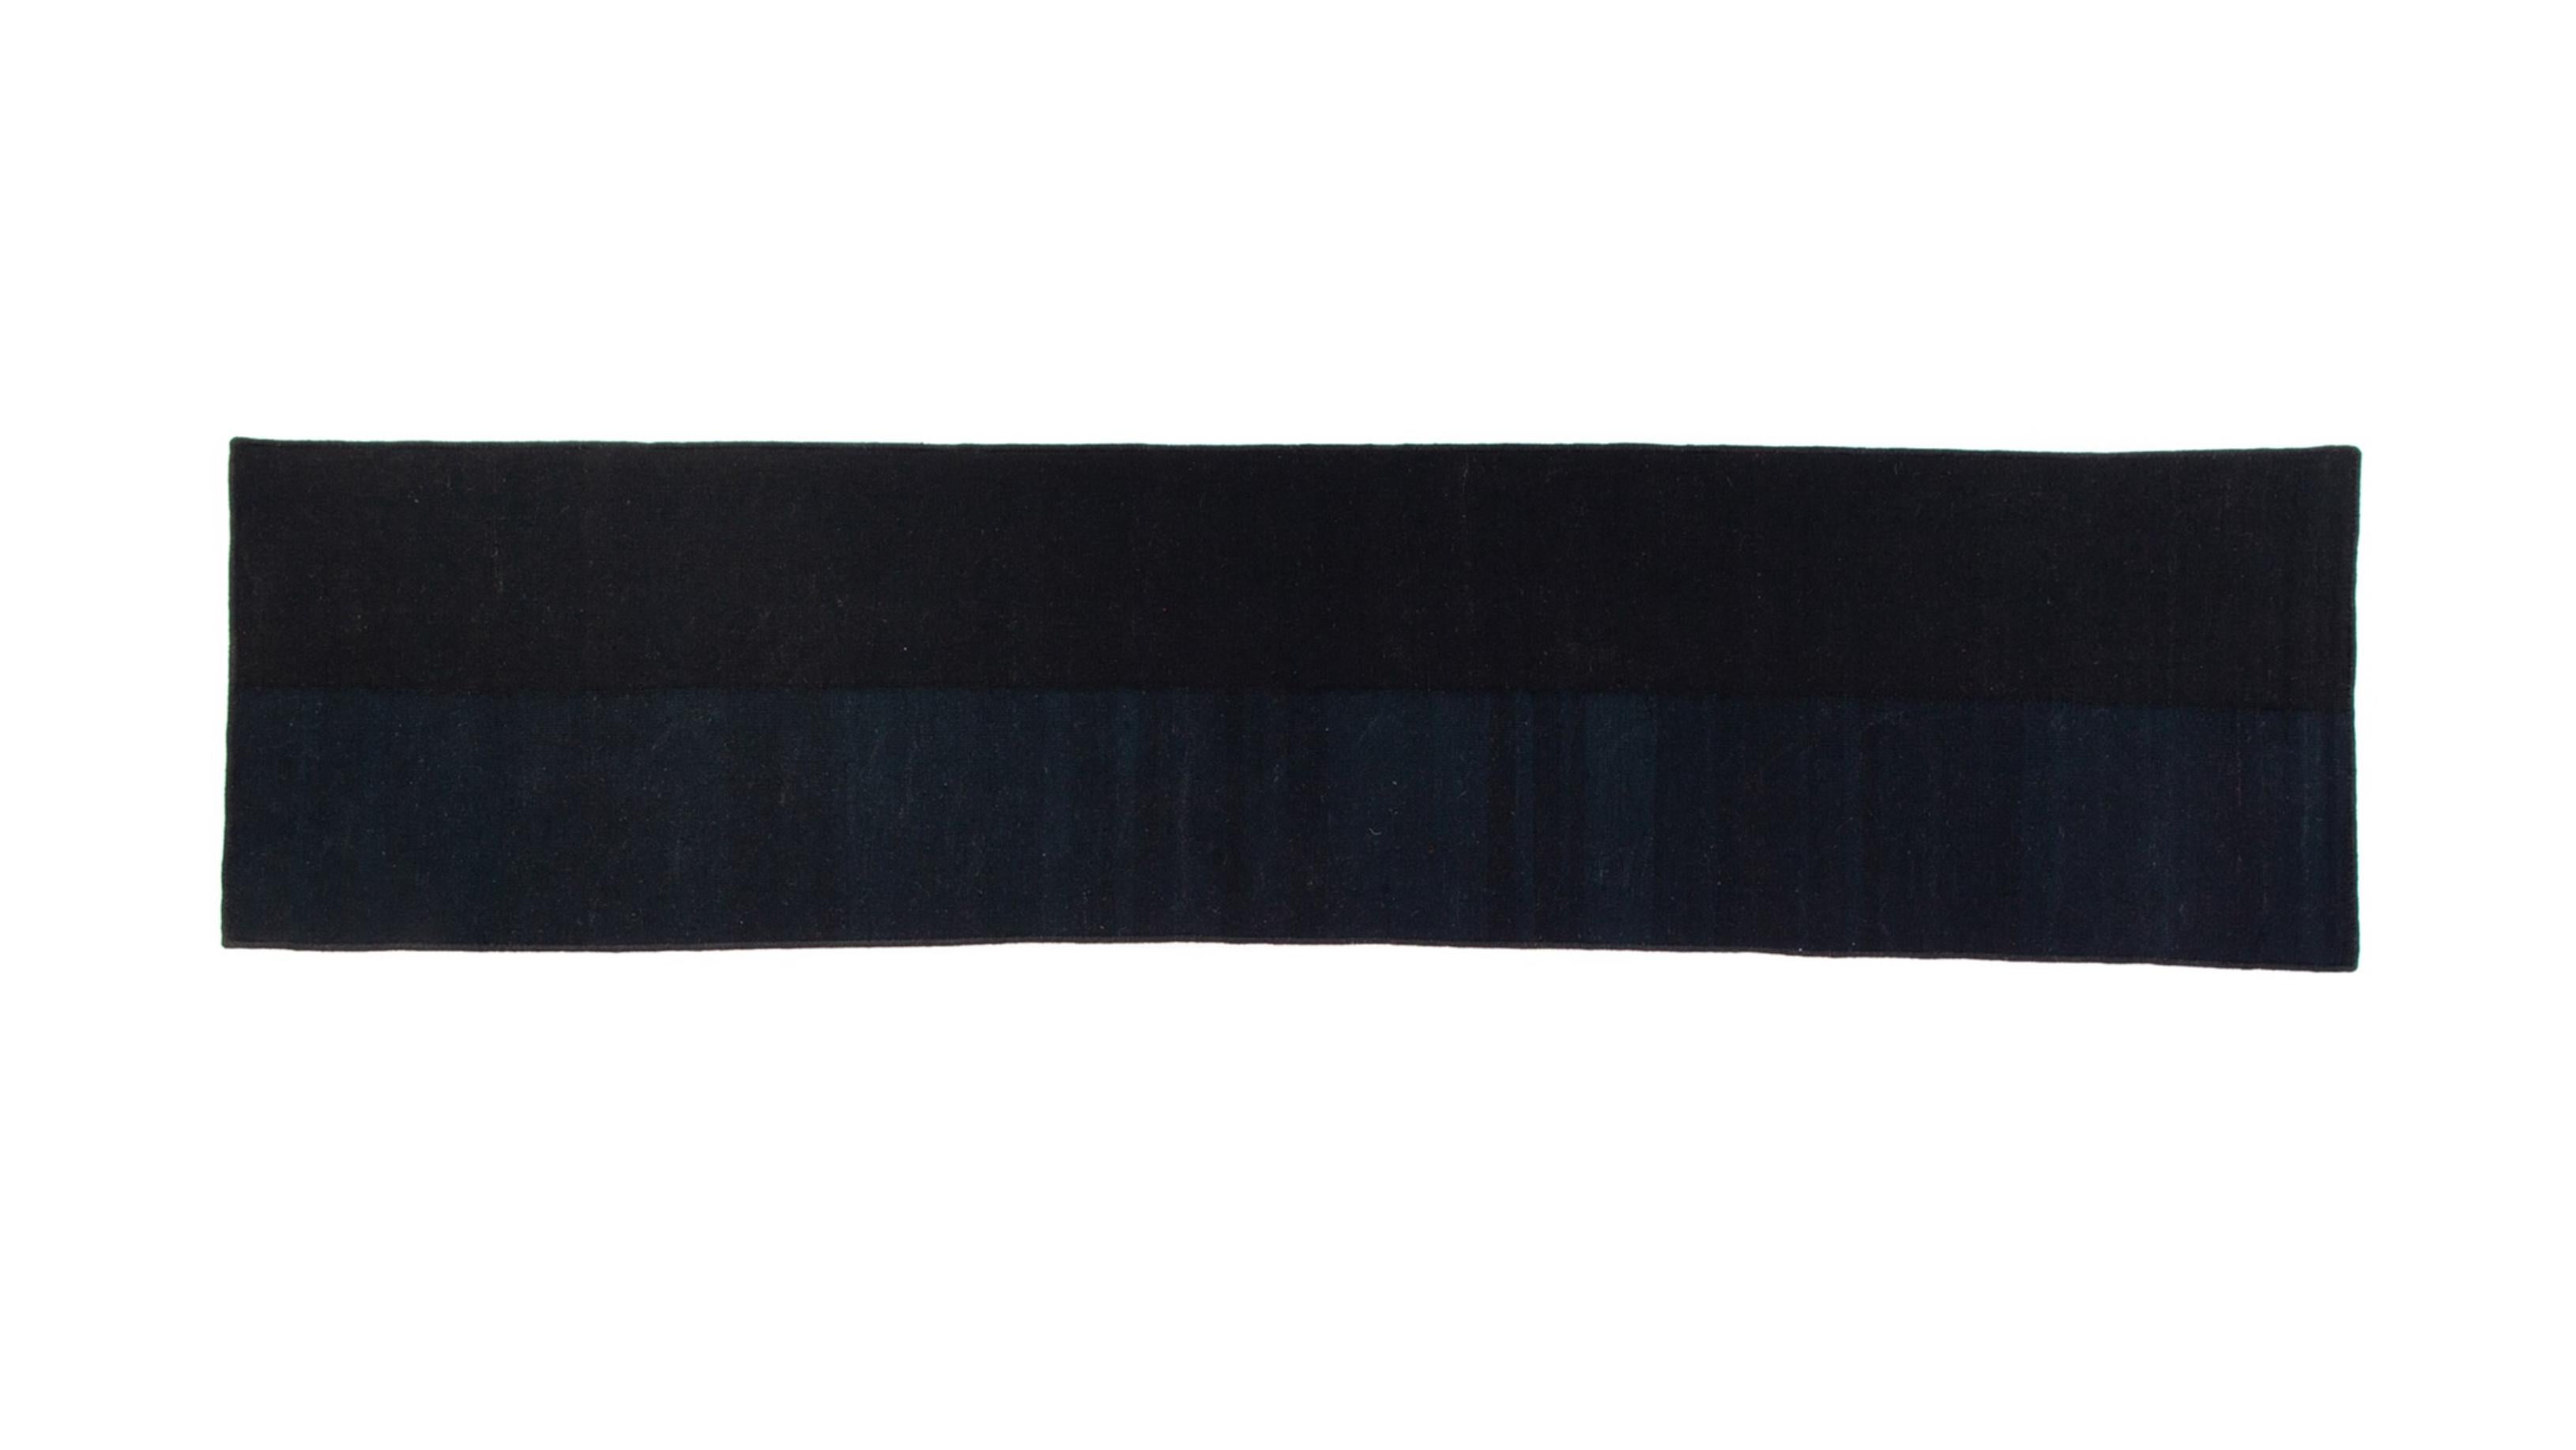 Kilim-Teppich von Taher Asad Bakhtiari
Abmessungen: B 105 x L 395 cm
MATERIALIEN: Wolle

Taher Asad-Bakhtiari (B.1982, Teheran) ist ein autodidaktischer Künstler, dessen Praxis sich auf Objekte, Textilien und Erfahrungen konzentriert, aber nicht